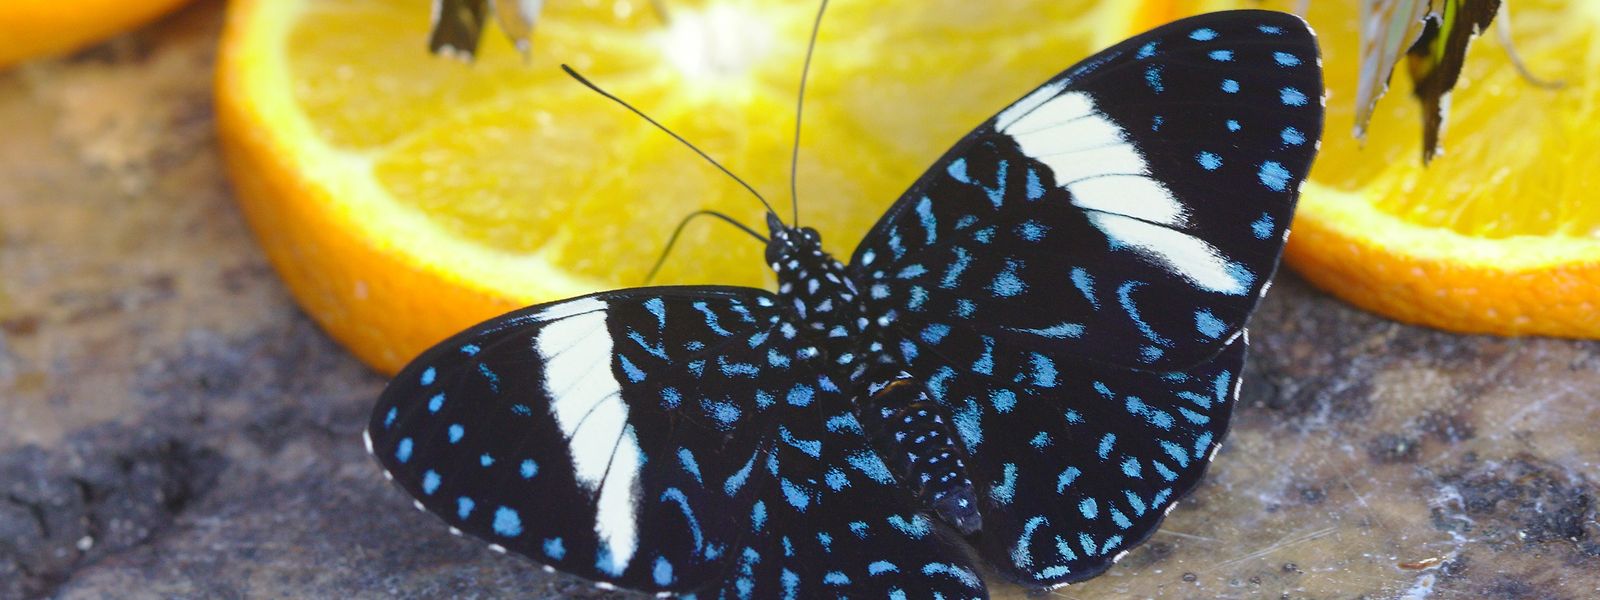 Schmetterlinge lassen sich aus der Nähe bewundern, wenn sie mit Orangenscheiben gefüttert werden. 